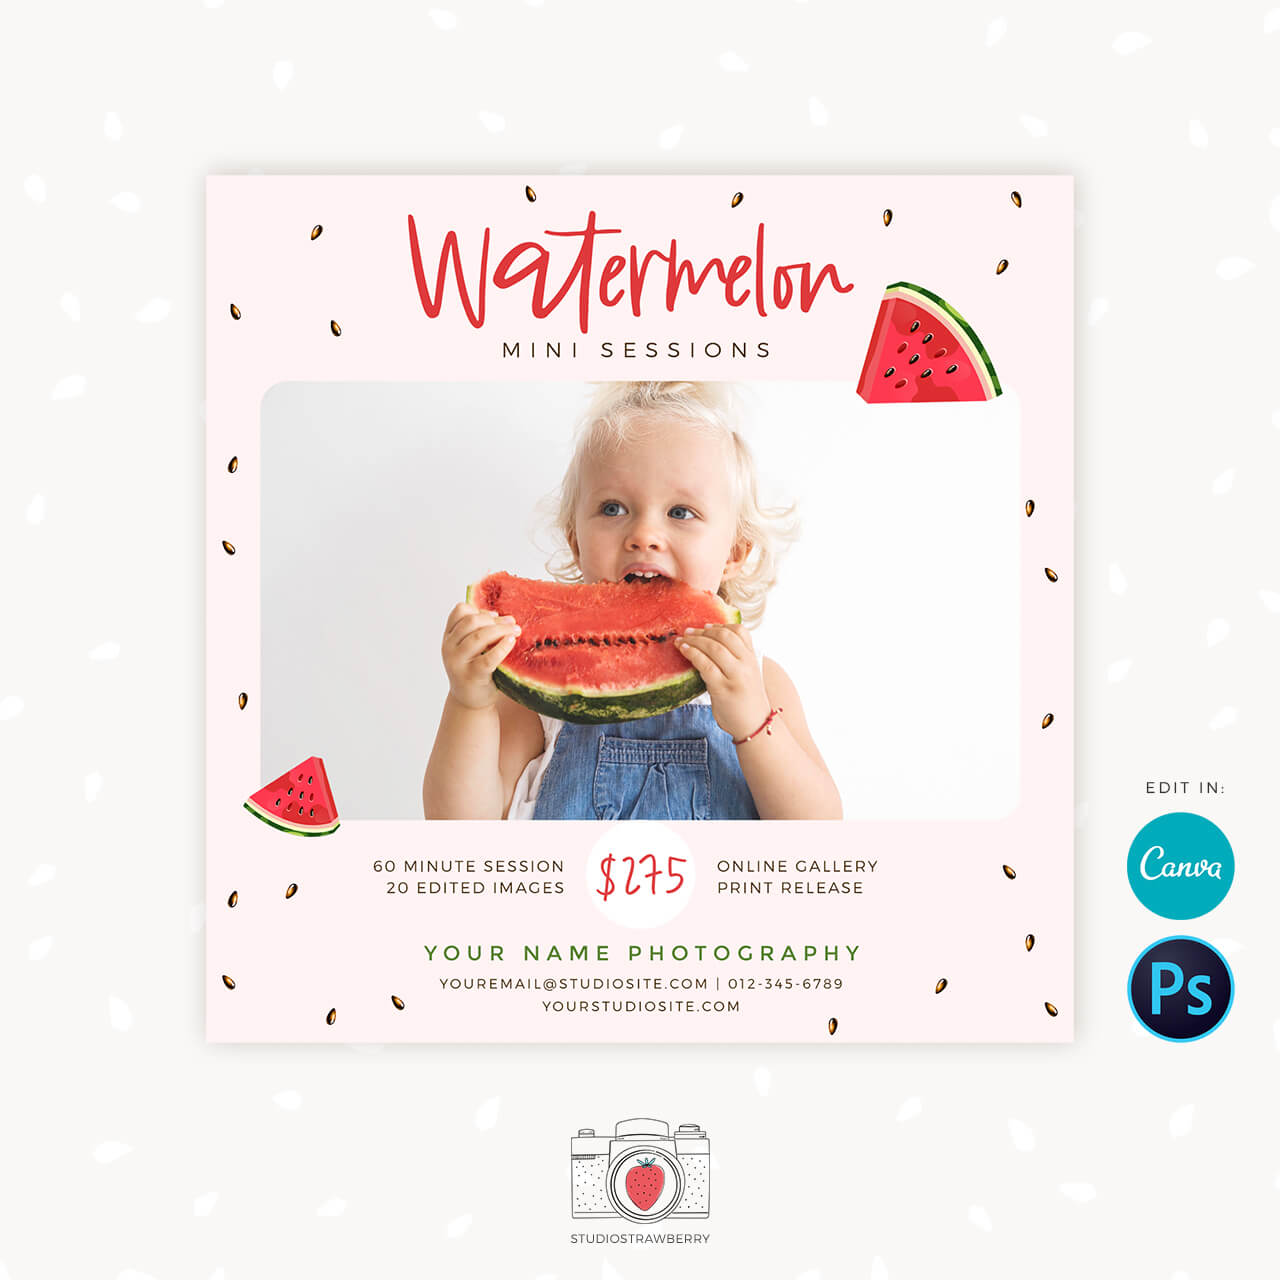 Watermelon mini sessions canva template